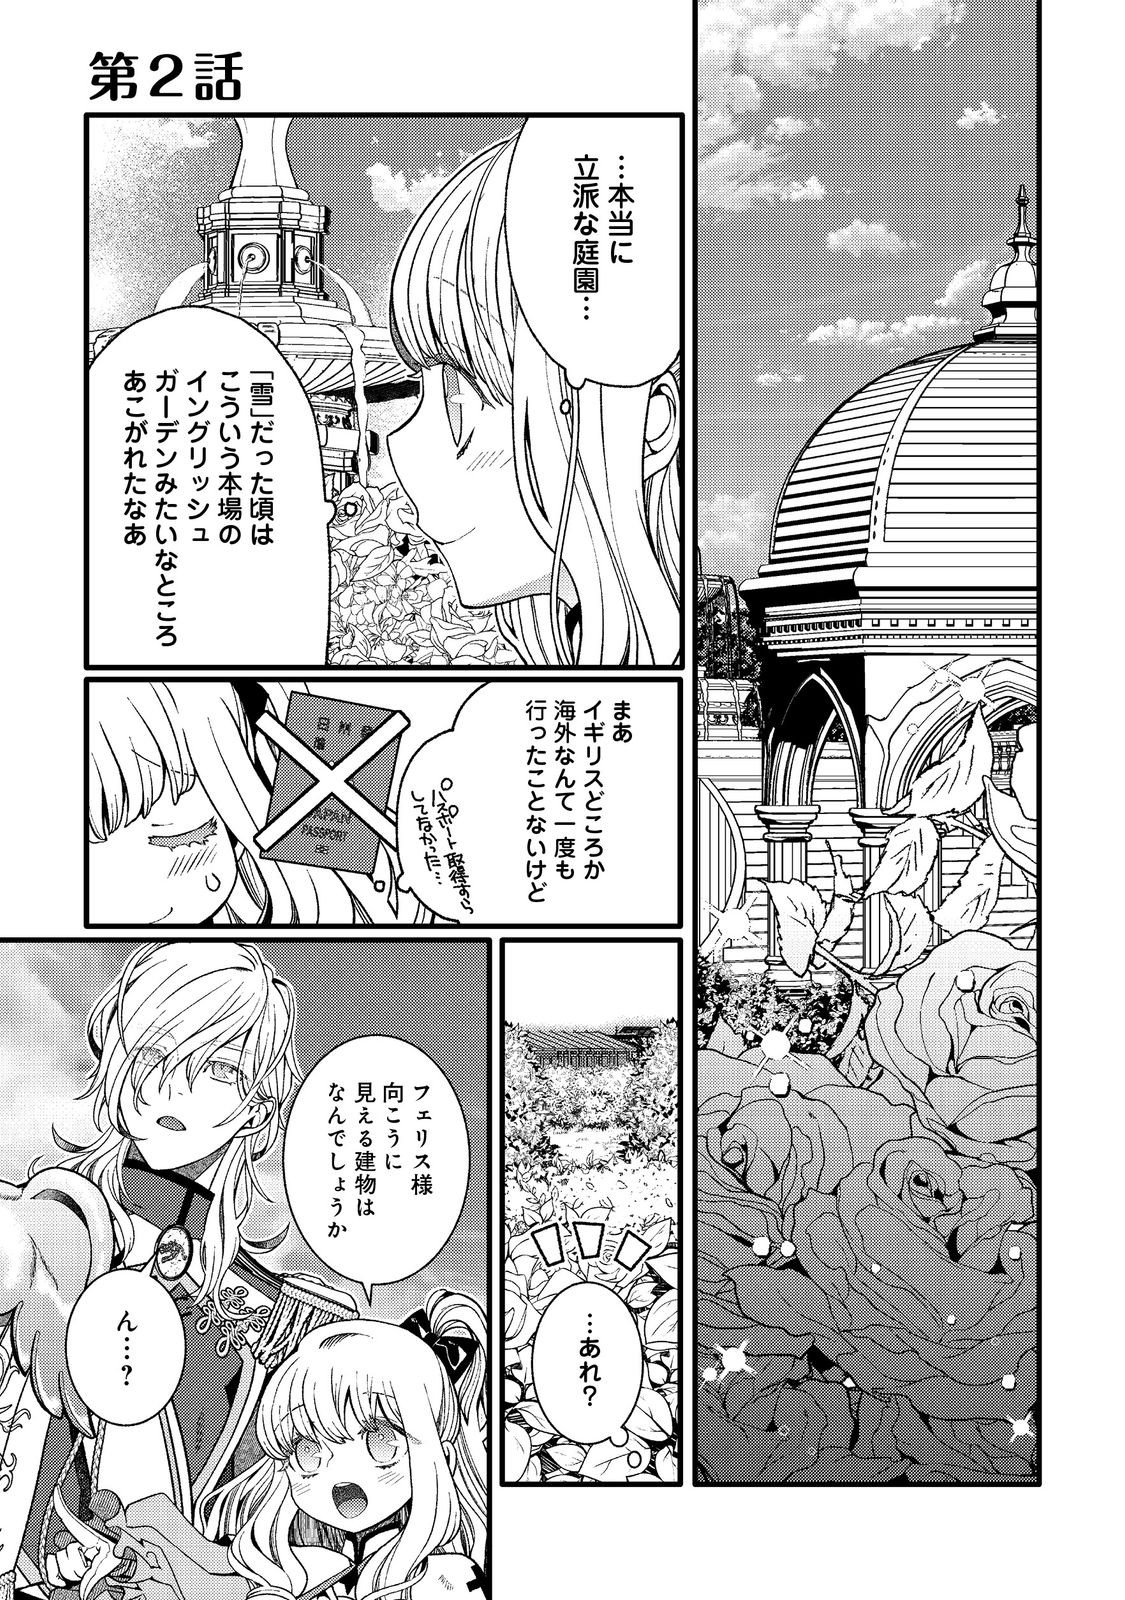 5-sai de, Ryuu no Ou Otoutou Denka no Hanayoume ni Narimashita - Chapter 2.1 - Page 1